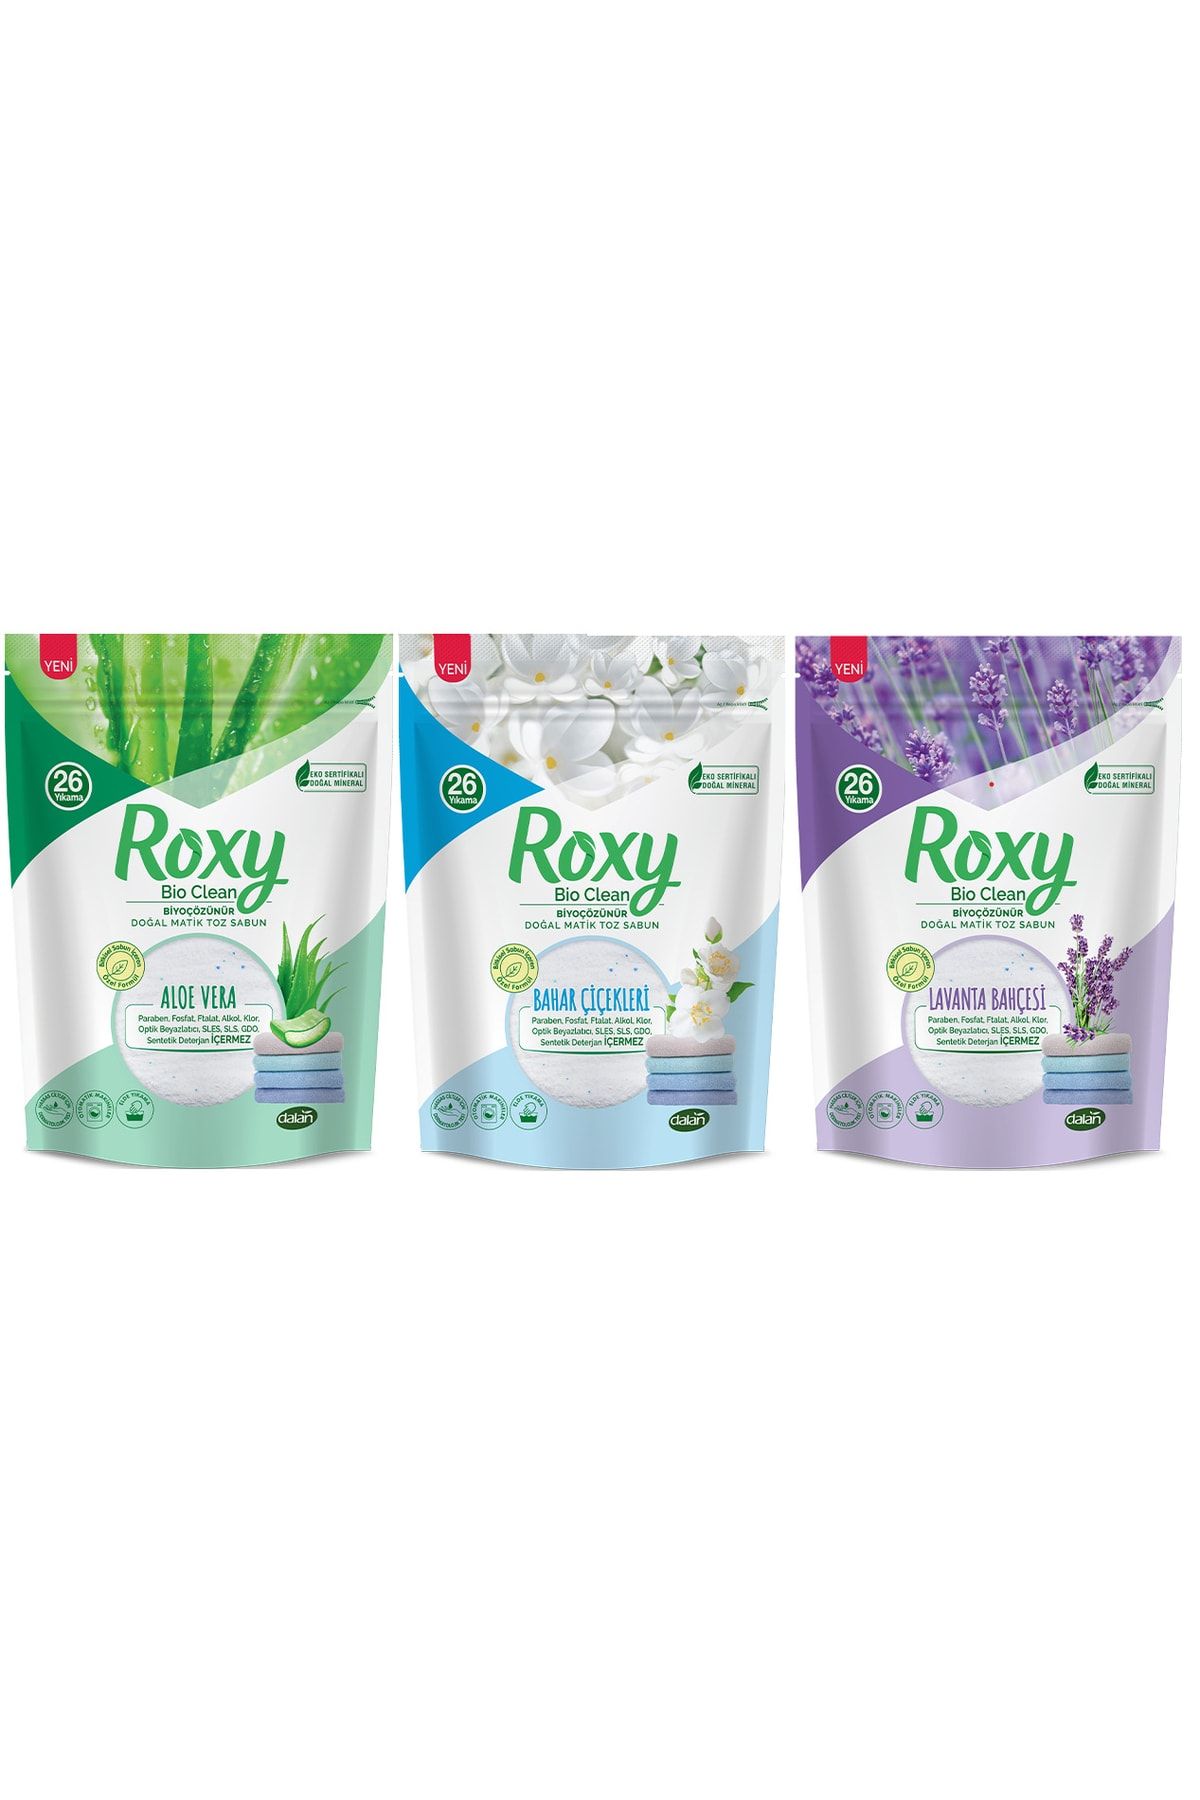 Dalan Roxy Bio Clean Karışık Set 800gr X3 - Bahar Çiçekleri & Lavanta Bahçesi & Aloe Vera